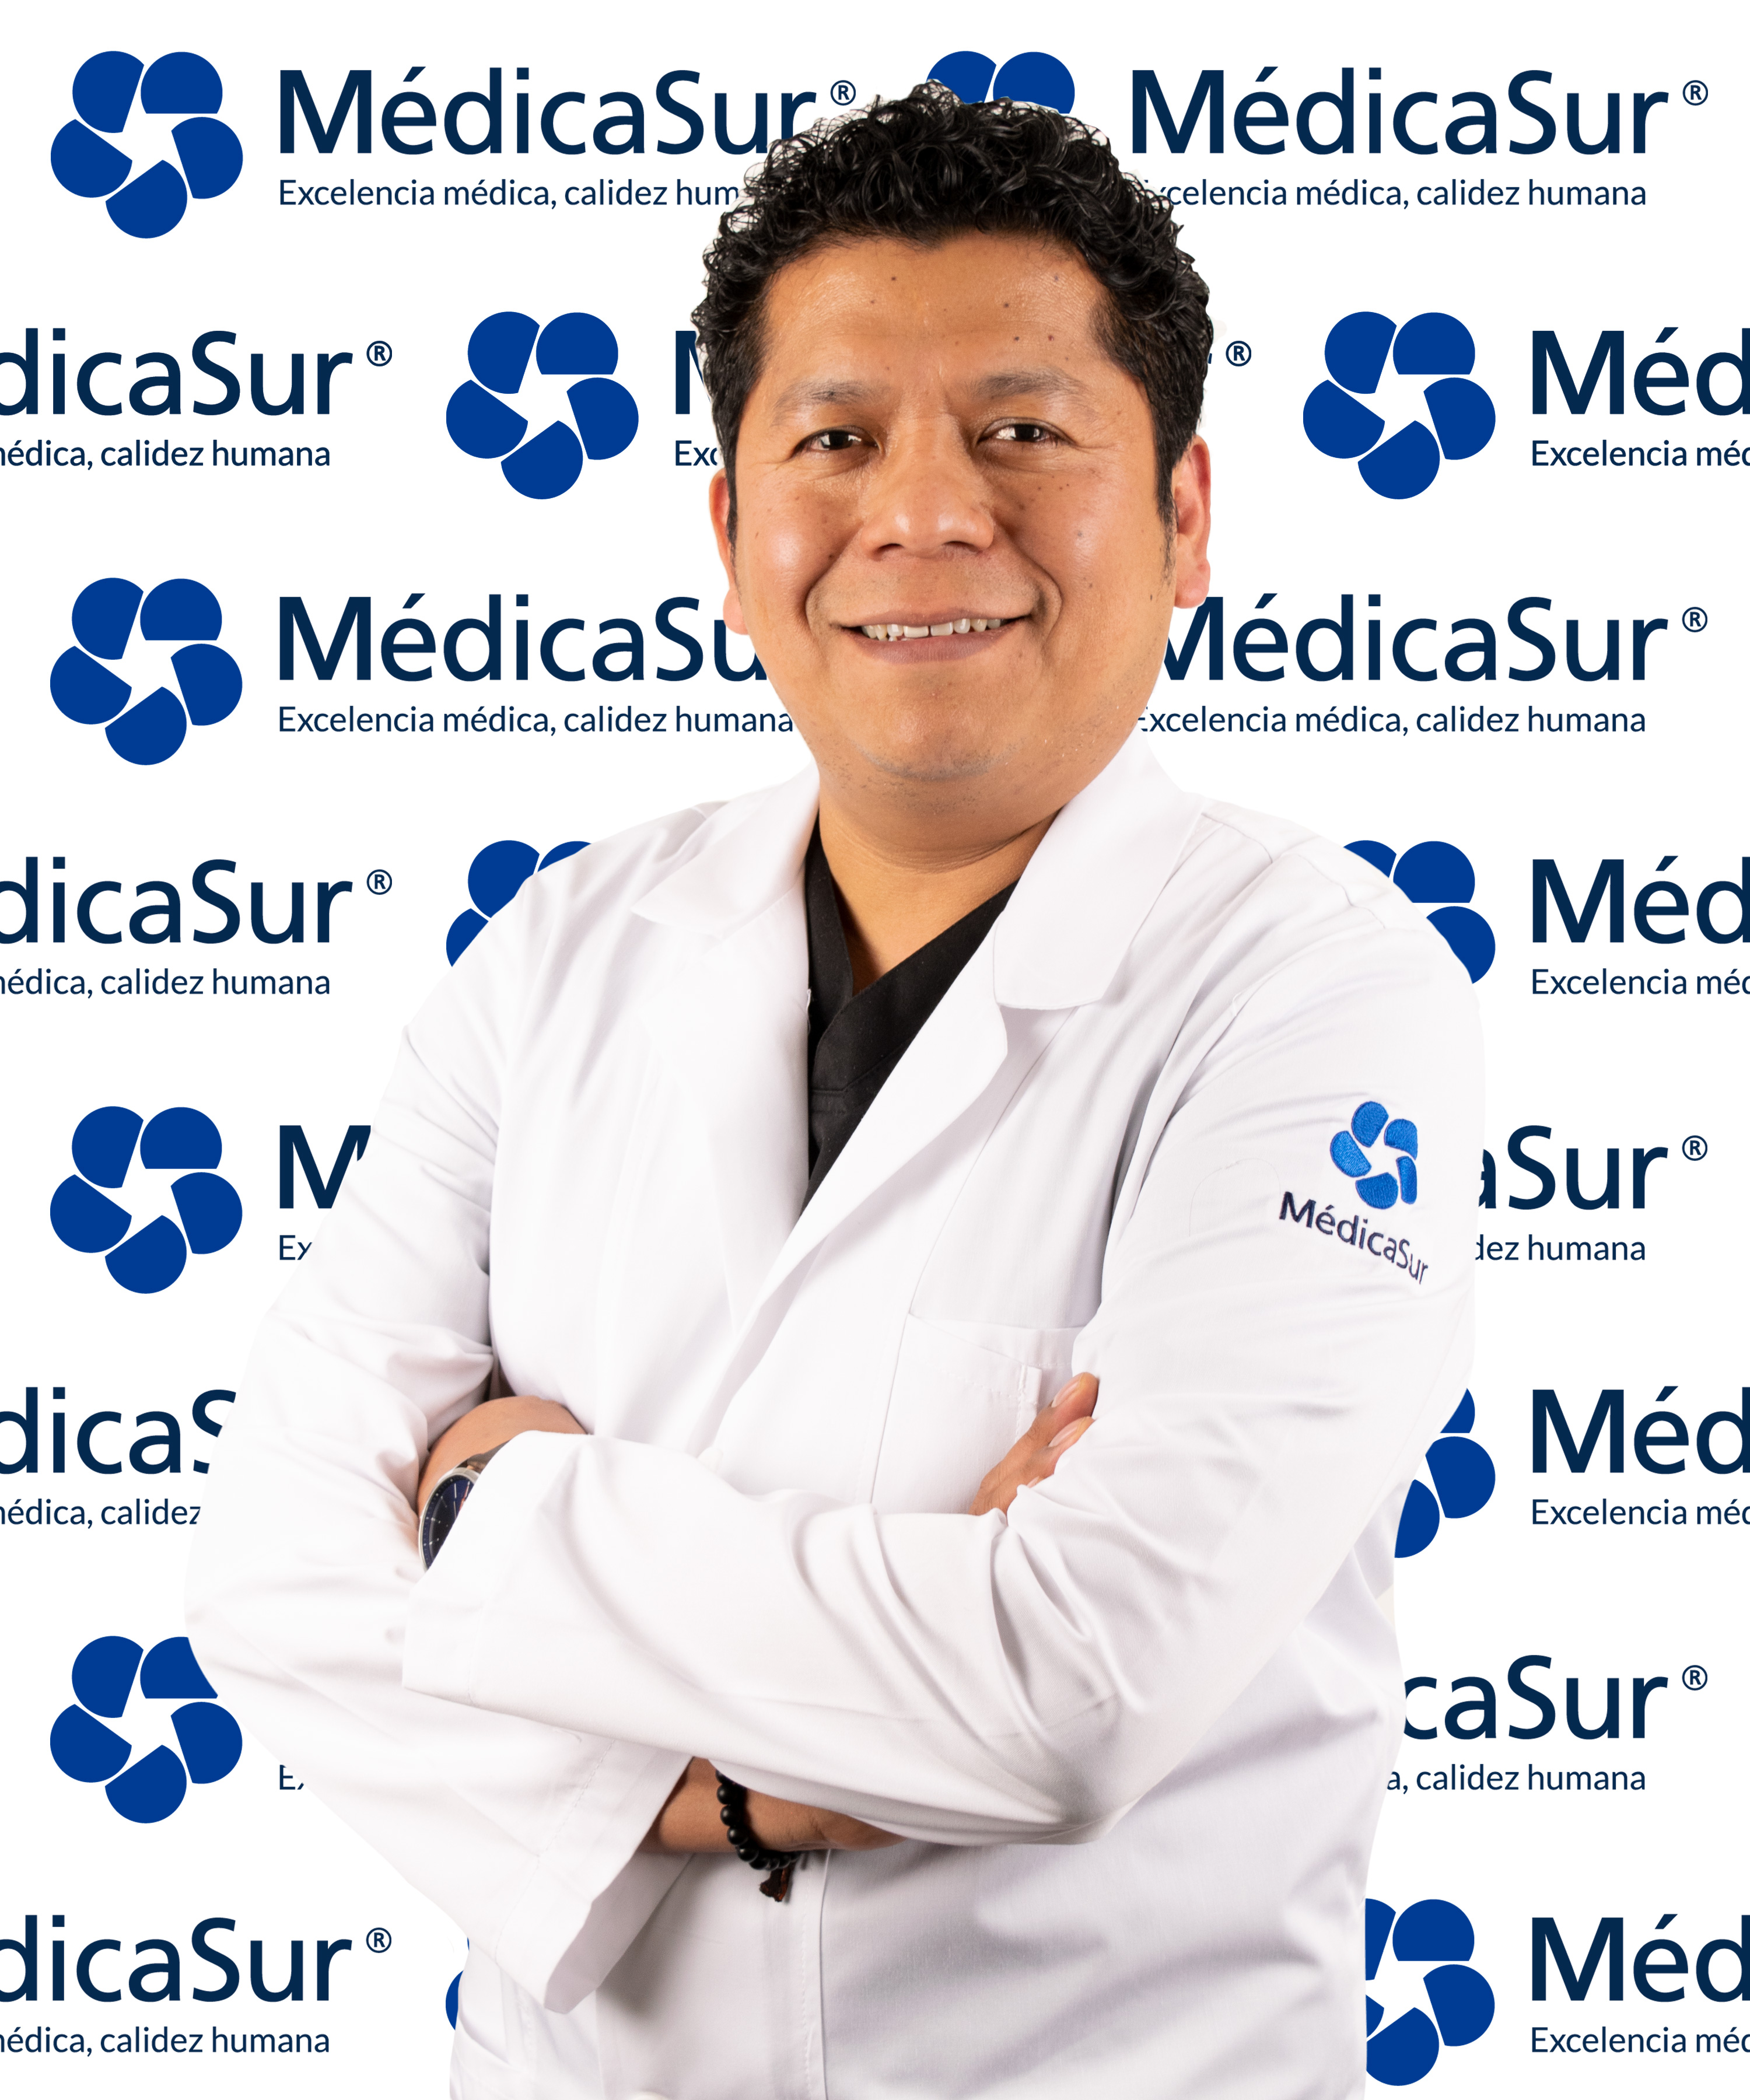 Dr. Neisser Morales Victoriano Médica Sur Copyright